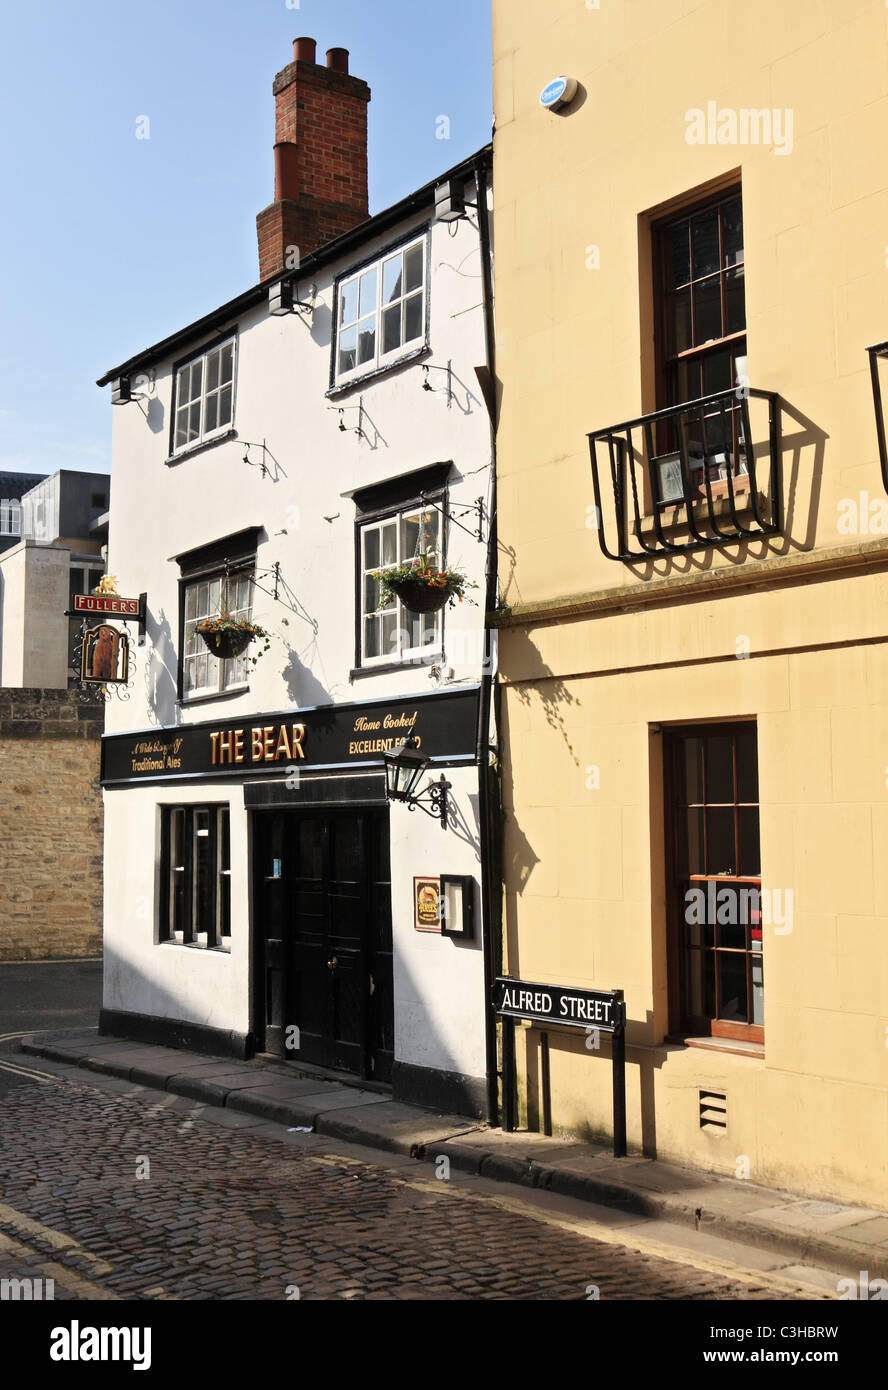 The Bear Inn, prétend être la plus ancienne maison à Oxford, Angleterre, Royaume-Uni Banque D'Images